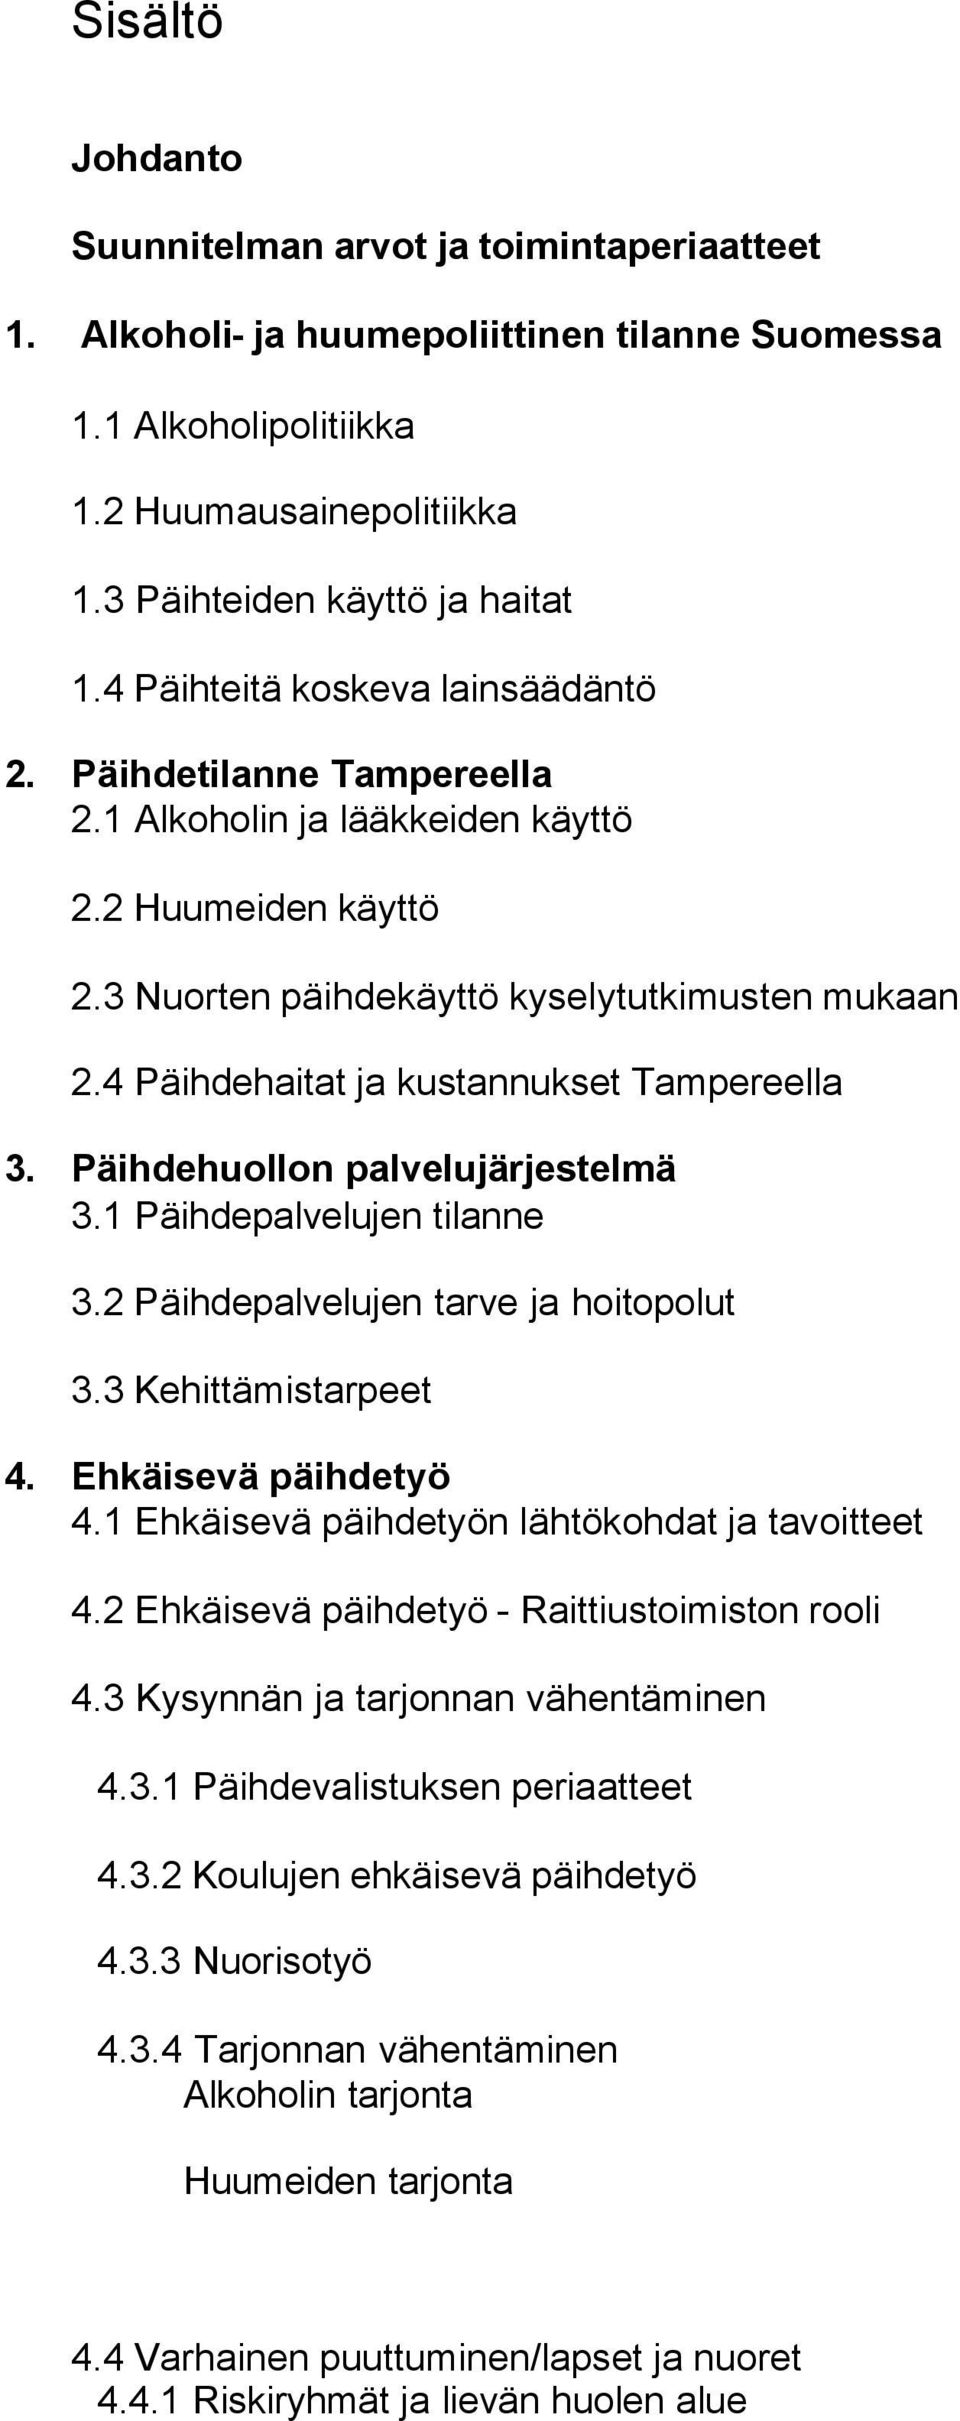 4 Päihdehaitat ja kustannukset Tampereella 3. Päihdehuollon palvelujärjestelmä 3.1 Päihdepalvelujen tilanne 3.2 Päihdepalvelujen tarve ja hoitopolut 3.3 Kehittämistarpeet 4. Ehkäisevä päihdetyö 4.